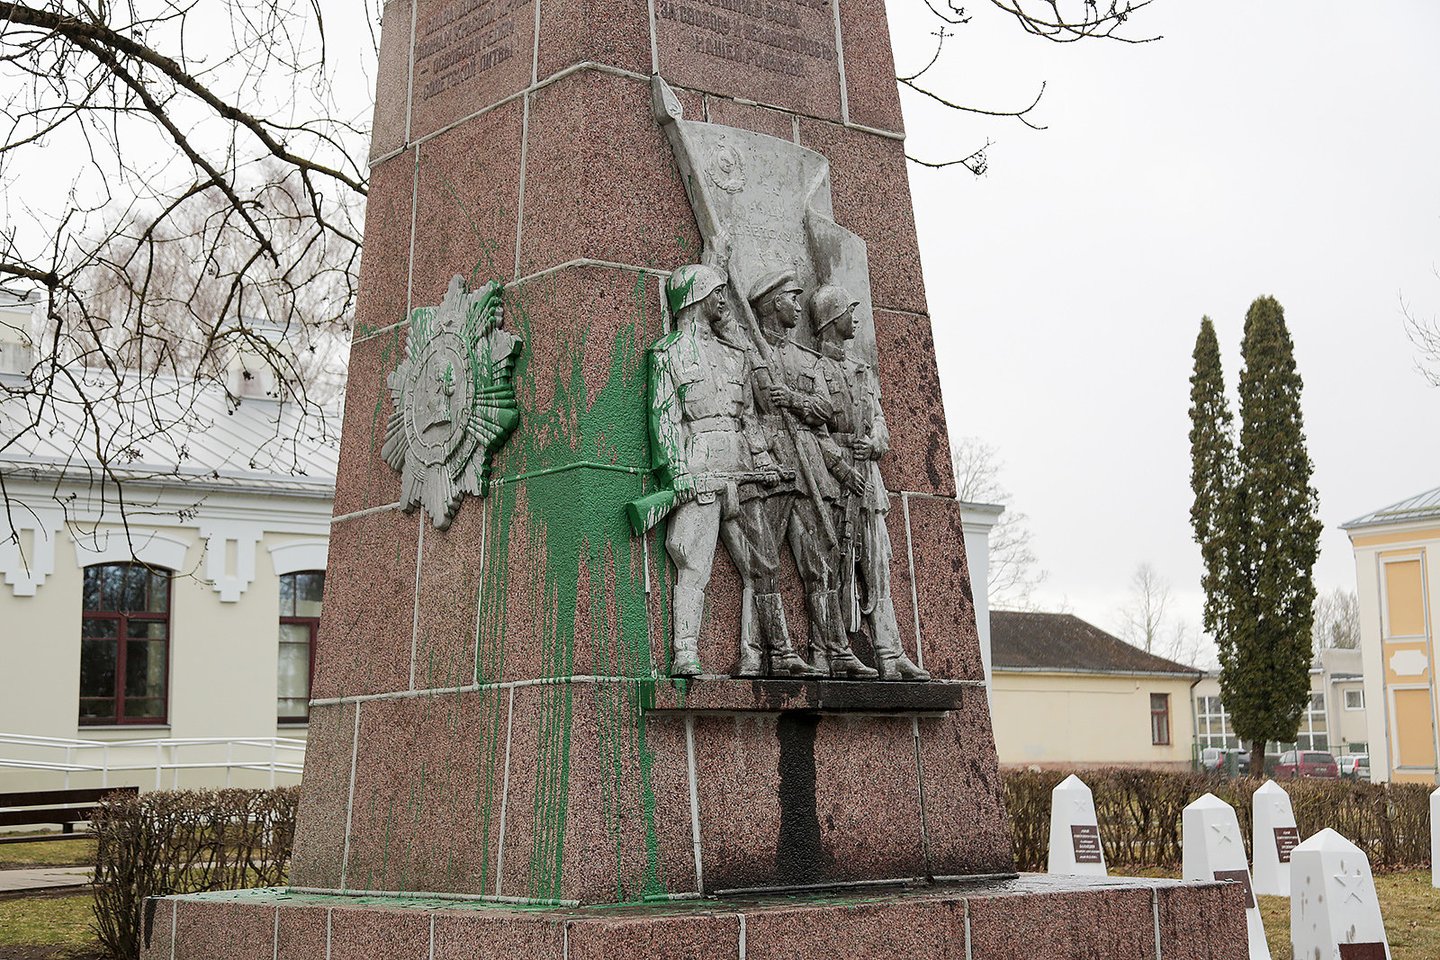  Prie Meno mokyklos obeliskas sovietų karių kapinėse pavasarį buvo aplietas dažais. Paminklas prieš du mėnesius buvo nugriautas, ir dabar jo vietoje žaliuoja veja. <br> L.Juodzevičienės nuotr.